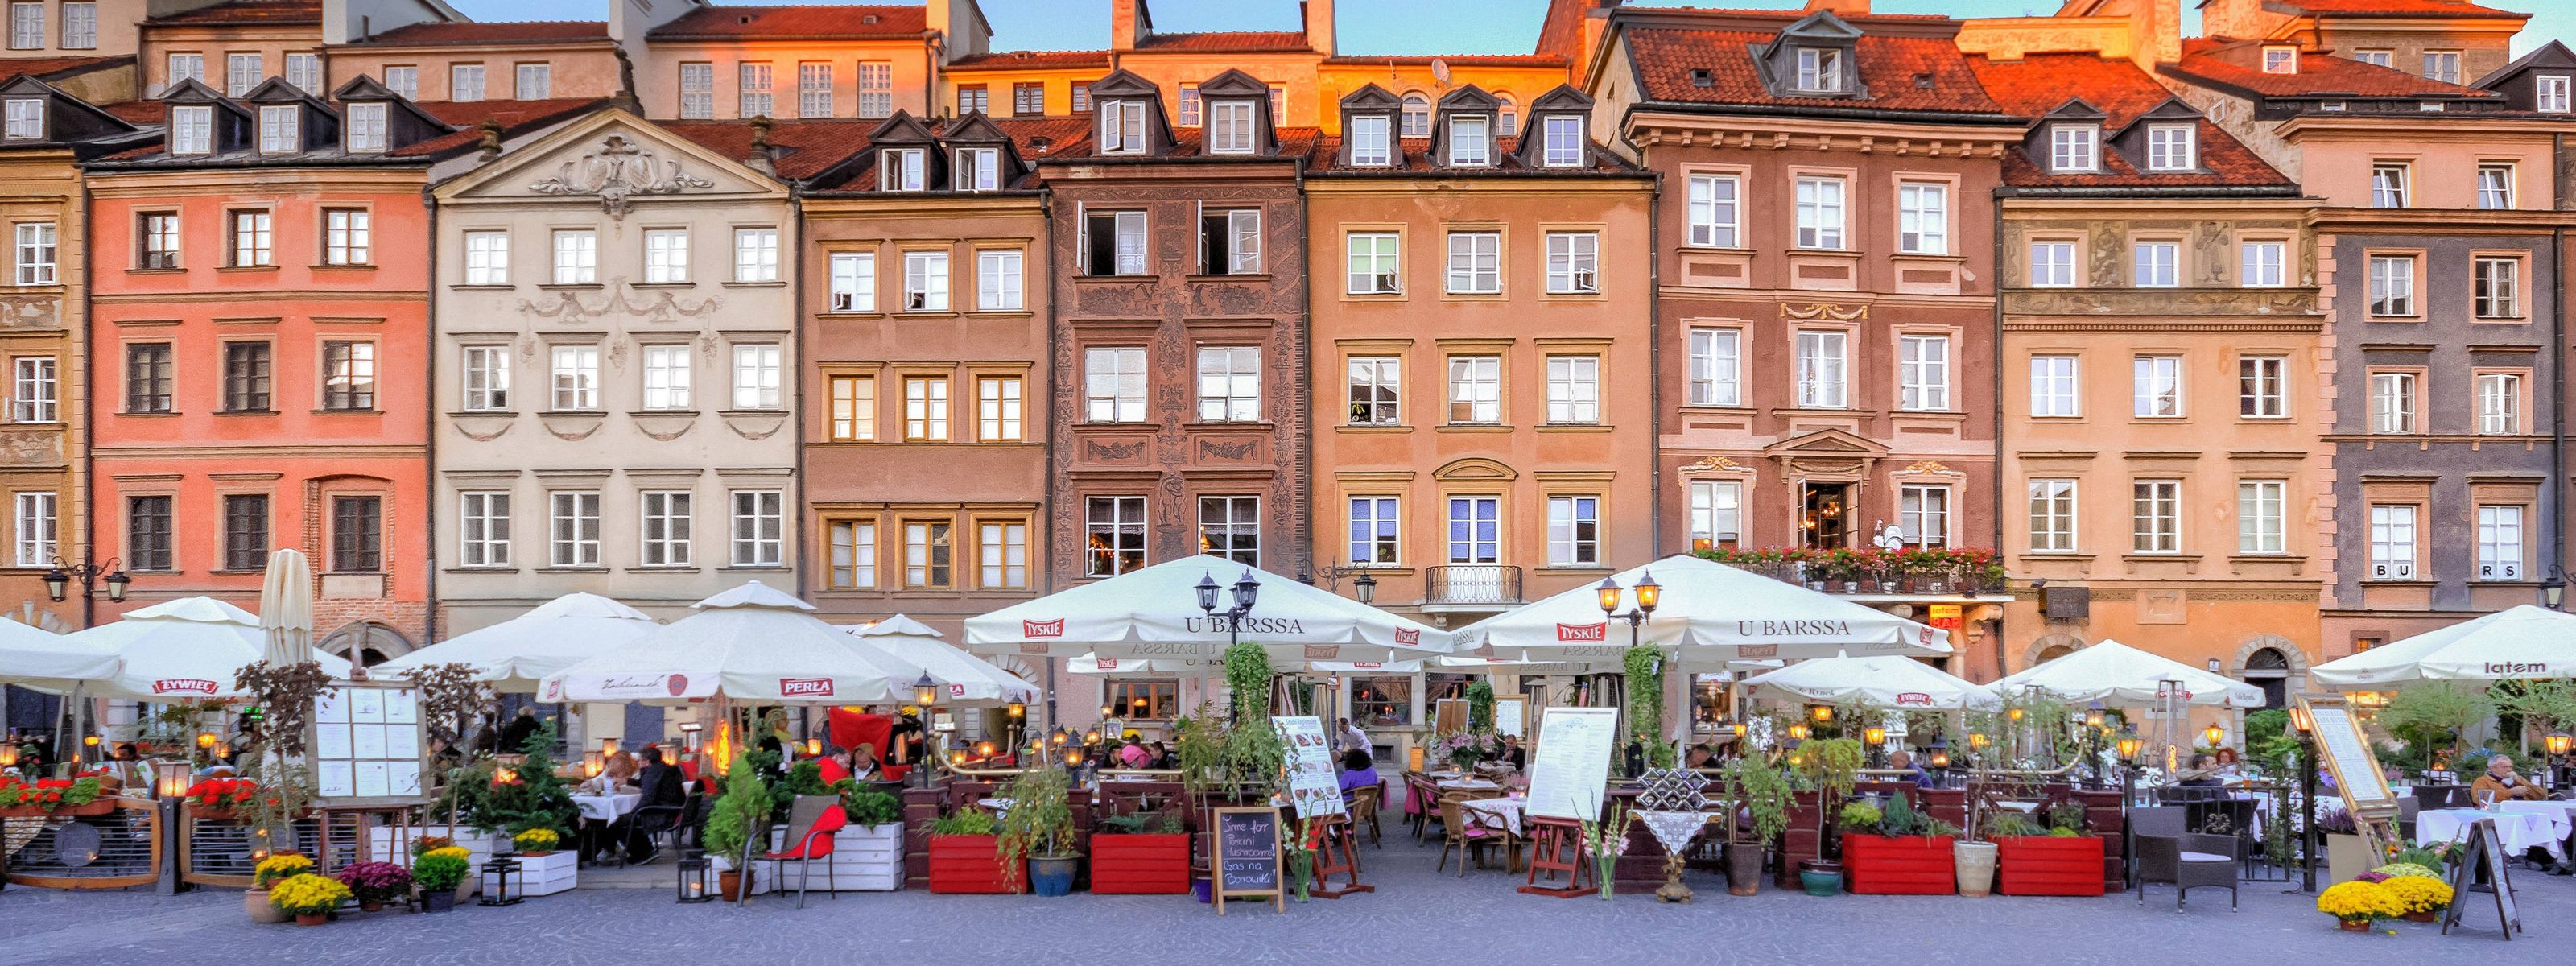 Marktplatz in Warschau 